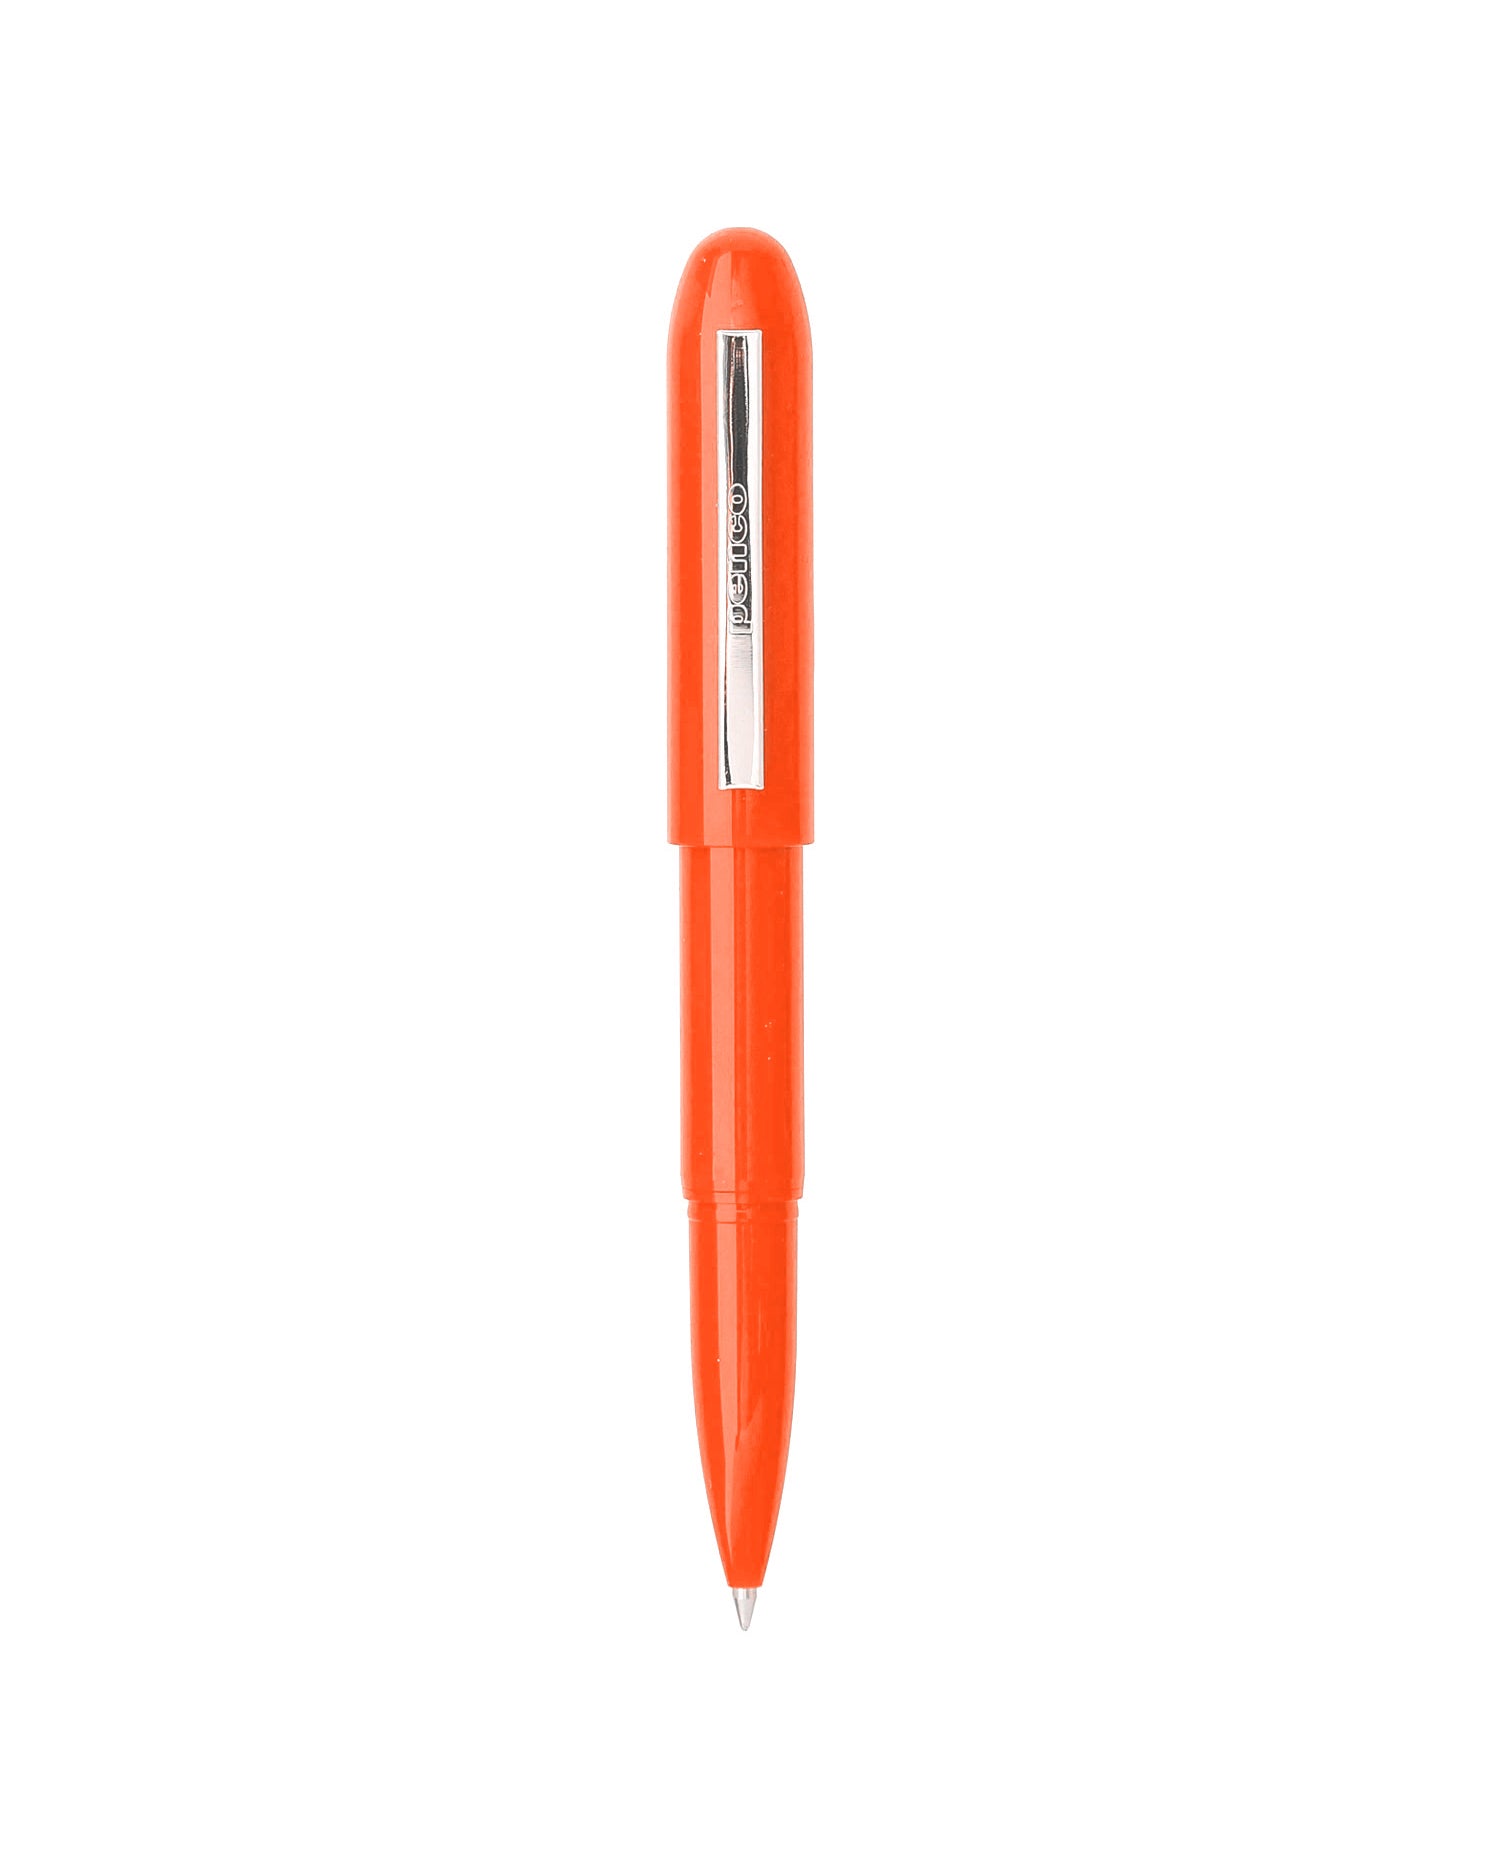 Orange bullet pen, plastic, Penco brand